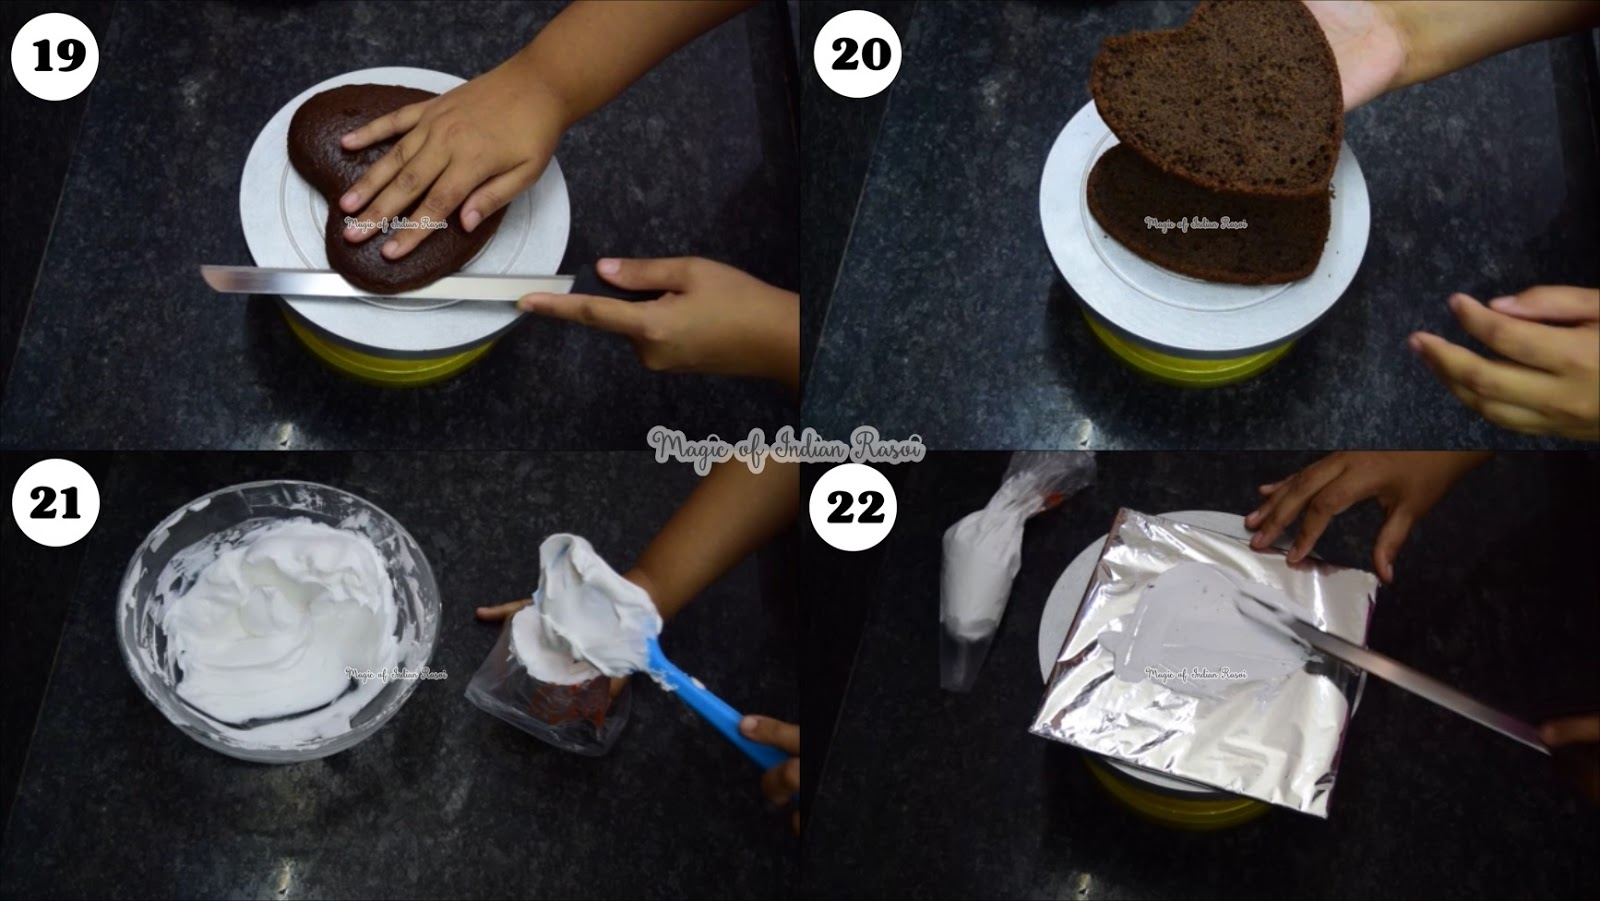 Perfect Black Forest Cake (Eggless) Recipe - परफेक्ट ब्लैक फॉरेस्ट केक (एगलेस) रेसिपी - Priya R - Magic of Indian Rasoi